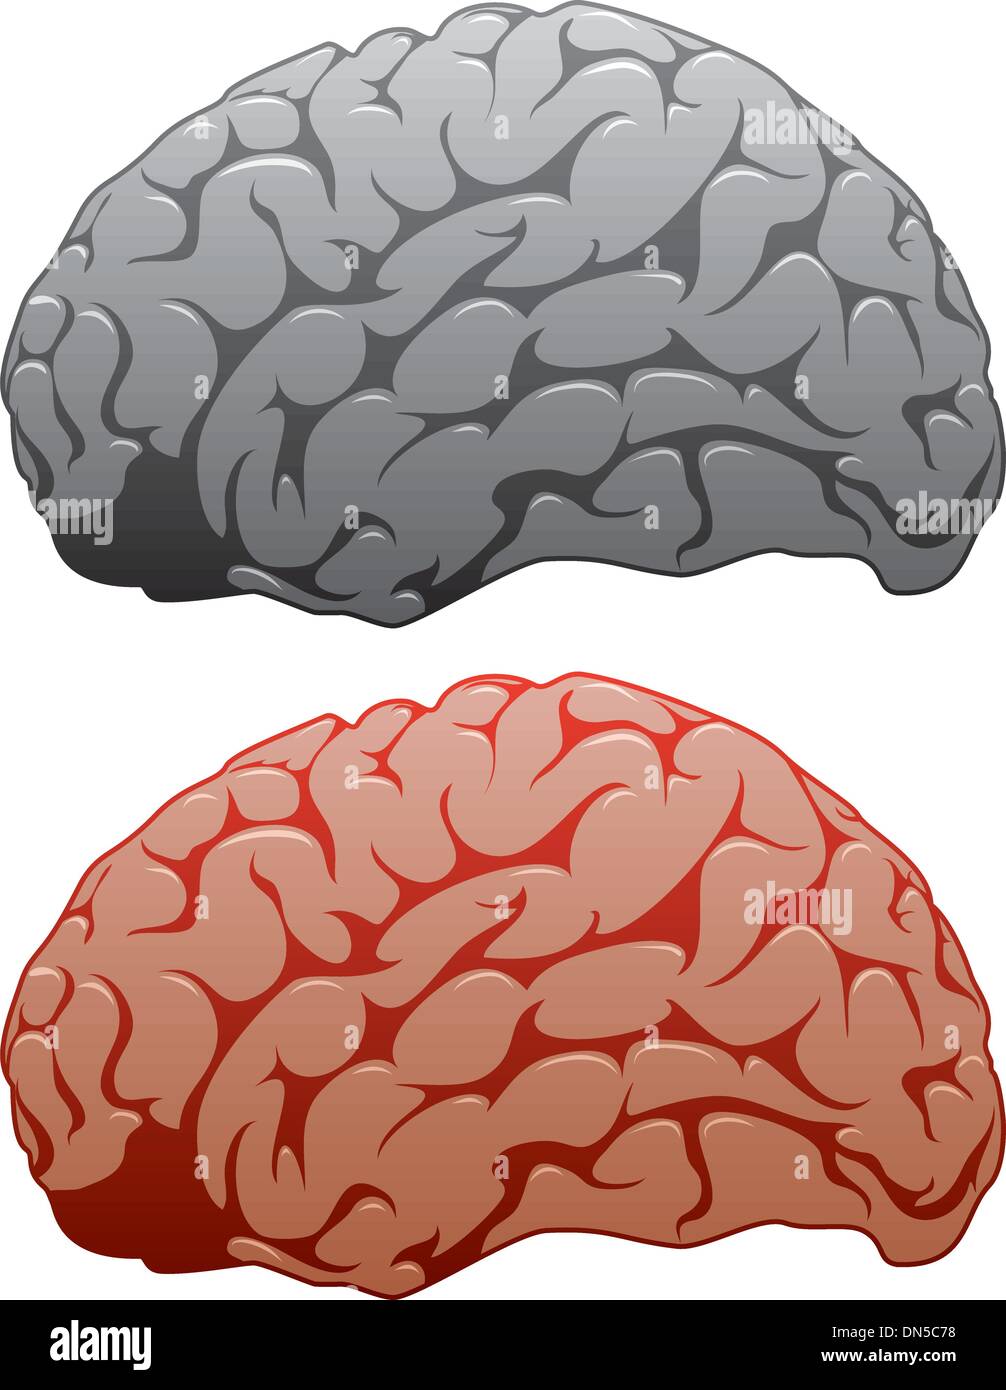 Vektor-Set des menschlichen Gehirns Stock Vektor